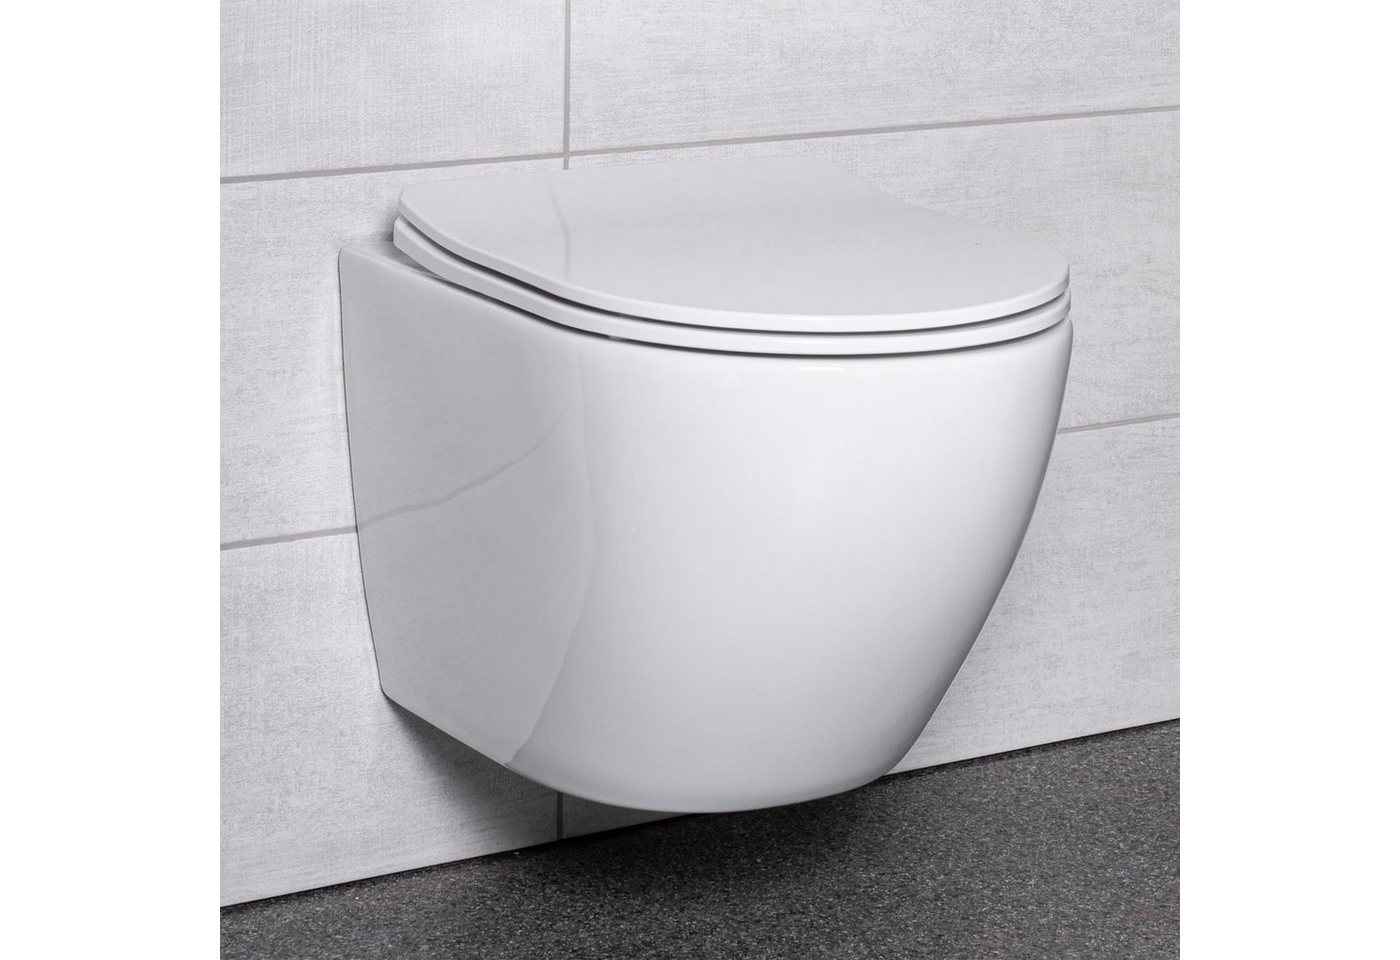 KOLMAN Tiefspül-WC Spülrandlos Wand-WC Delos, Weiß, mit Slim Soft-close WC-Sitz und Schallschutzmatte von KOLMAN